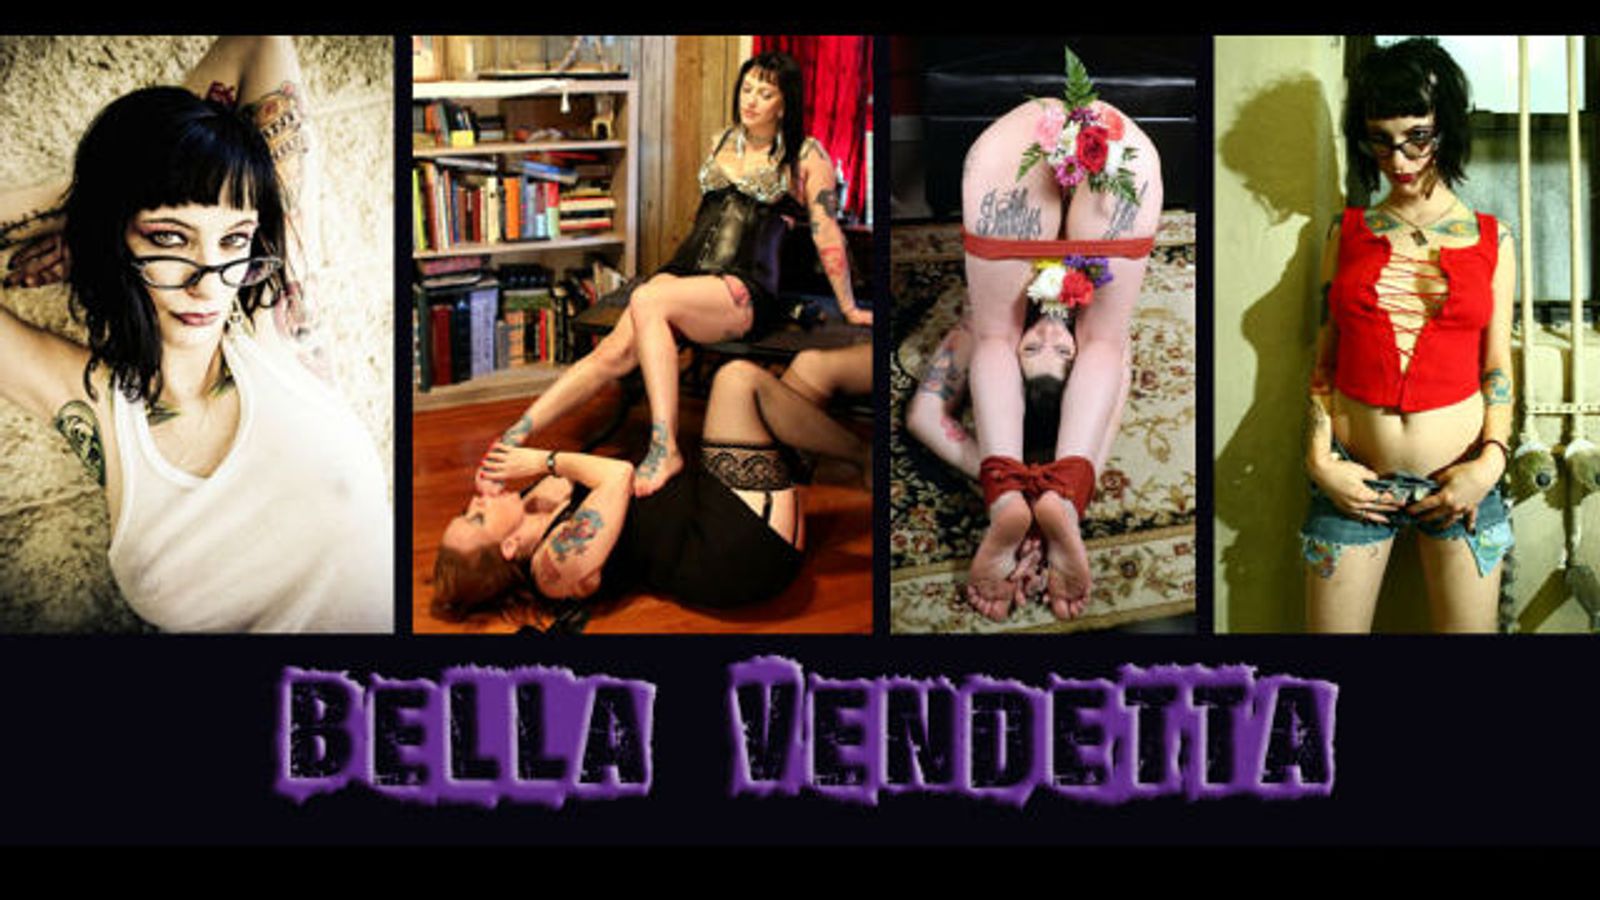 Fetish Model Bella Vendetta Launches Clips4Sale.com Store